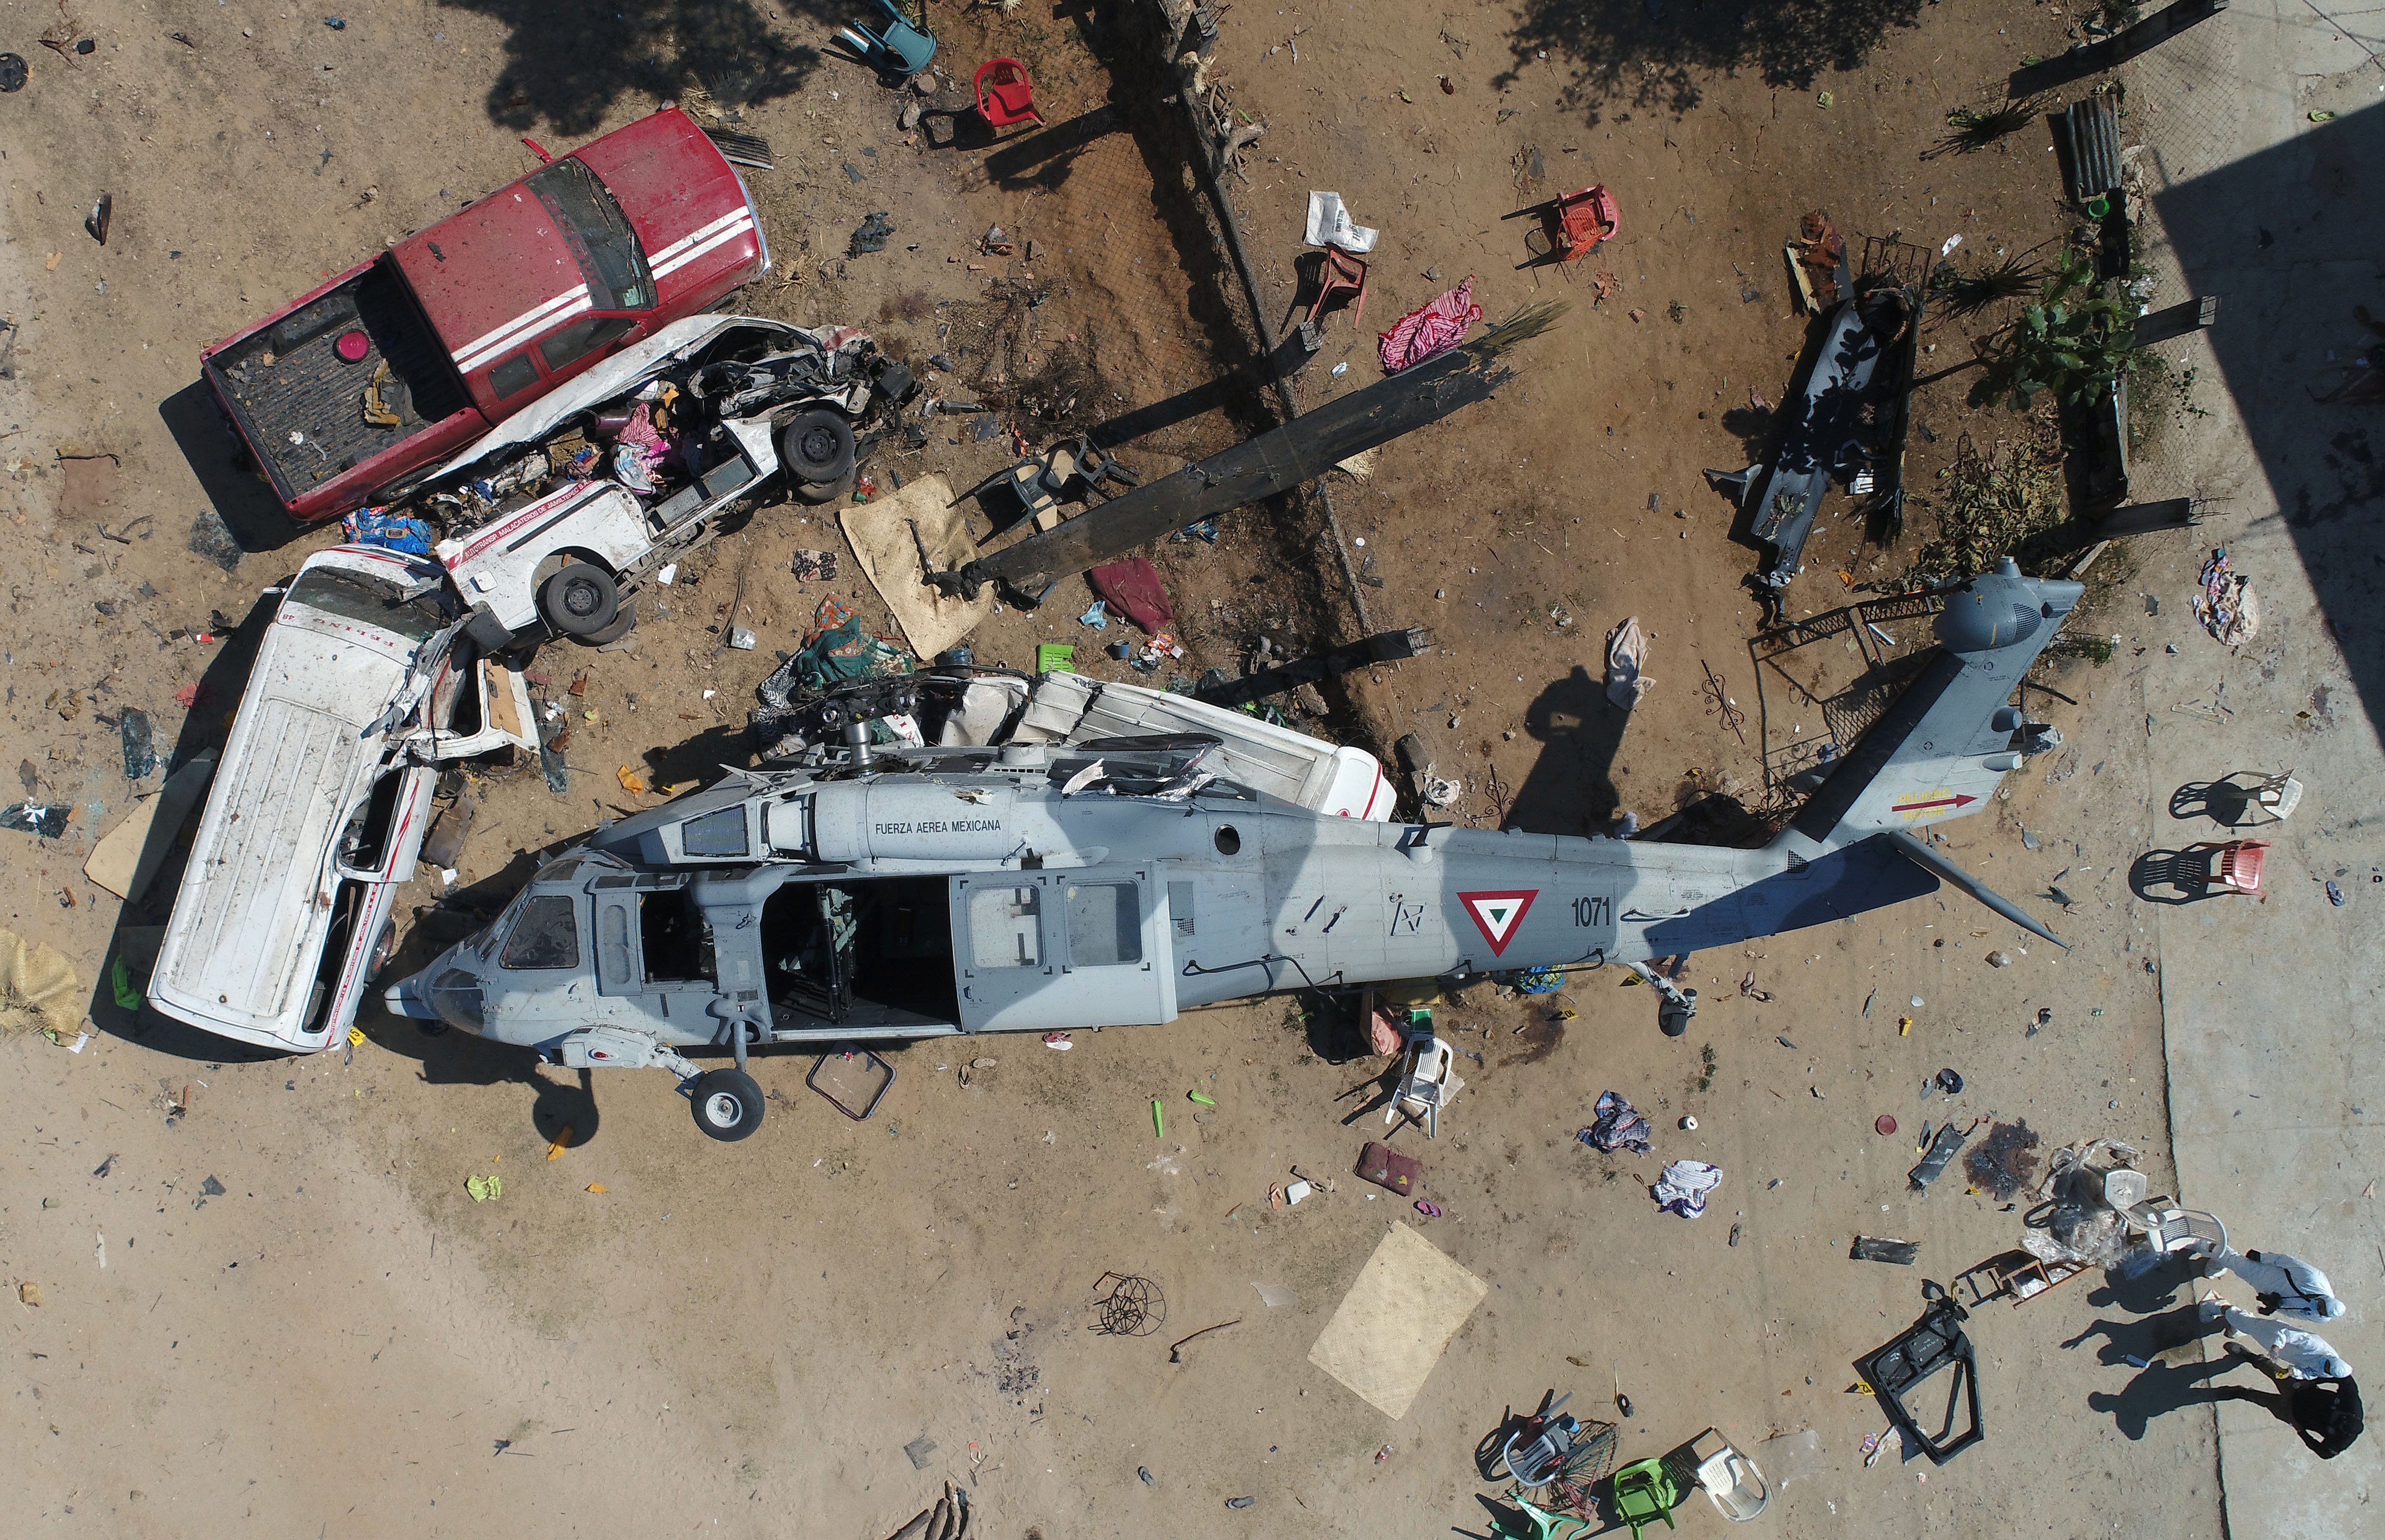 Qué se sabe del helicóptero de rescate que mató a 13 personas tras el último sismo en México? | Noticias Univision América Latina | Univision